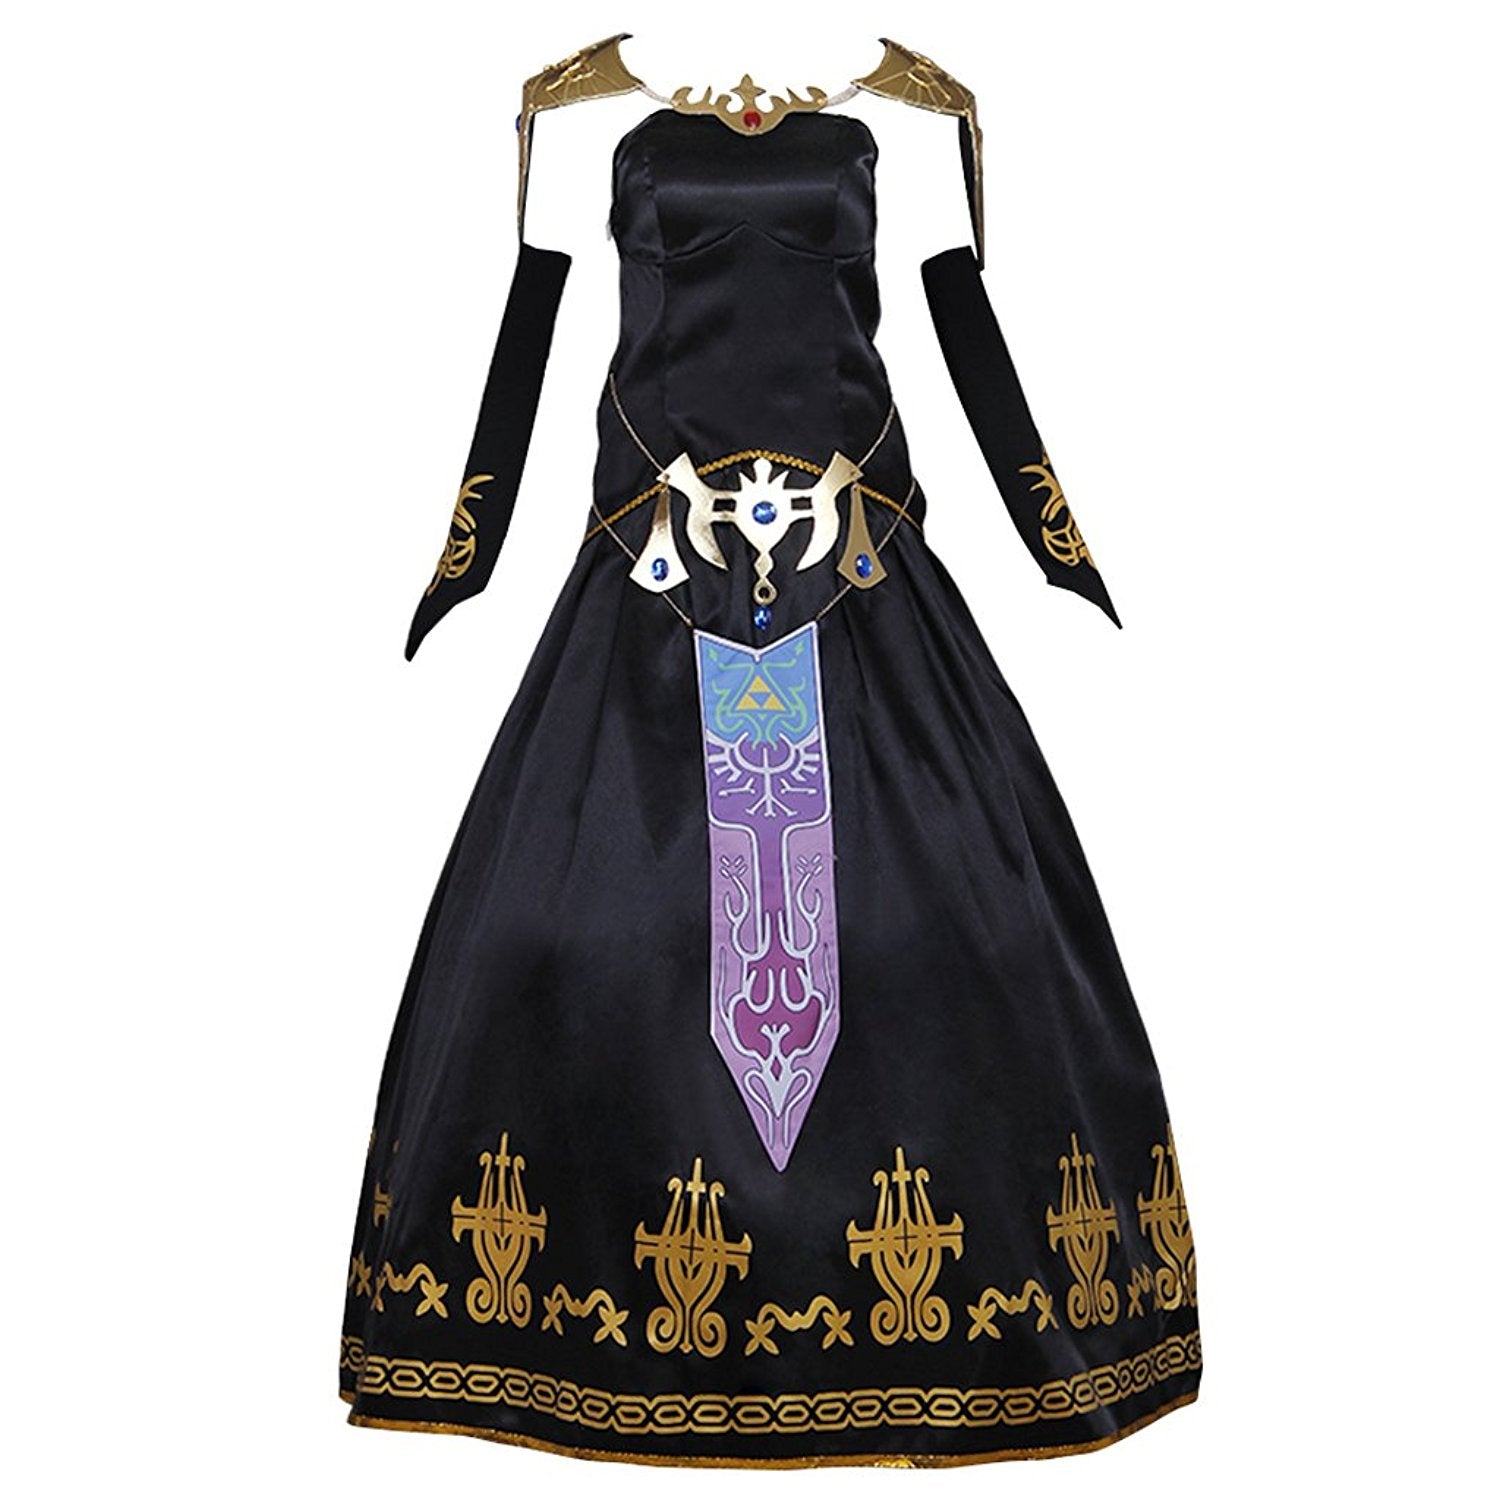 Legend of Zelda Twilight Princess Zelda Dress Cosplay Costume